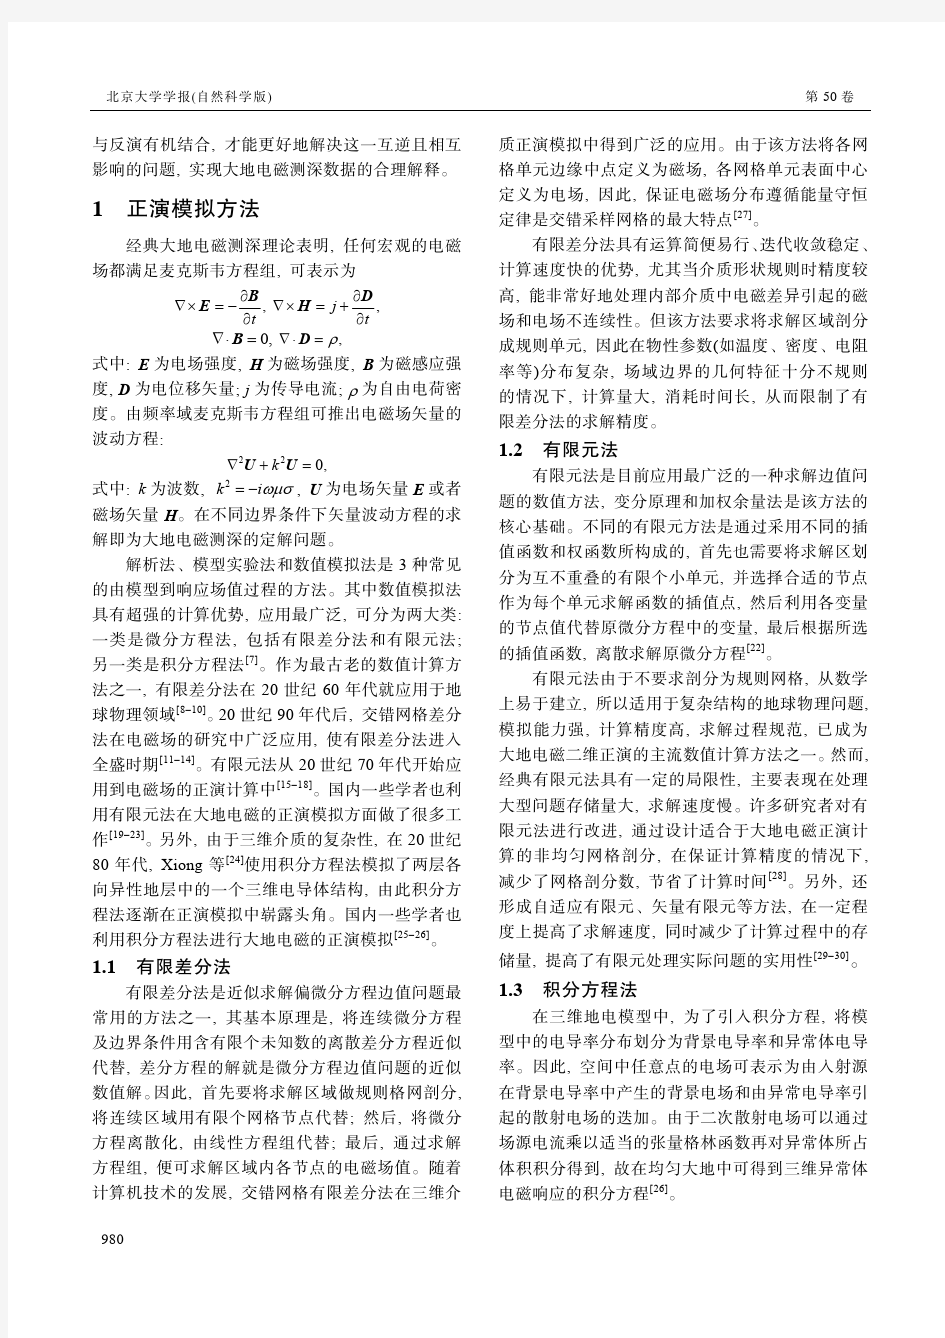 大地电磁测深正演和反演研究综述-北京大学学报